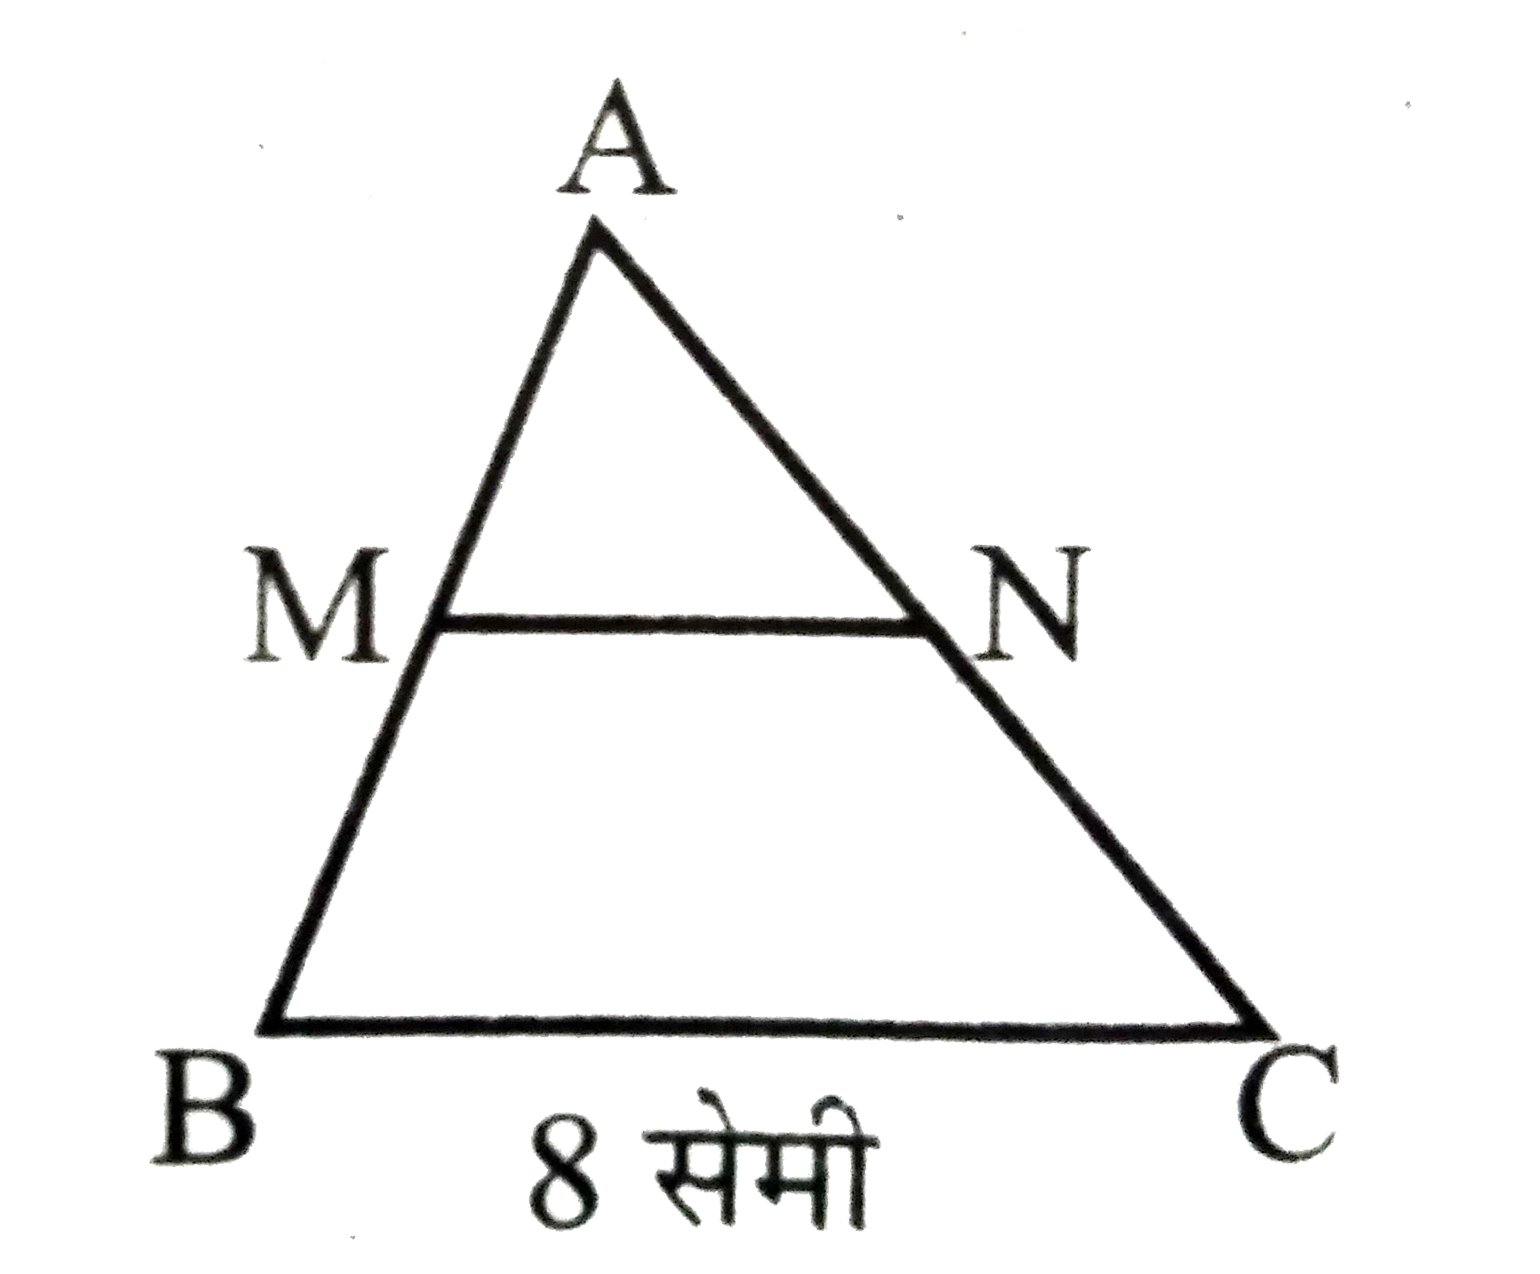 किसी DeltaABC में AB का मध्य बिंदु M तथा AC का मध्य बिंदु N है। यदि BC=8 सेमी तो MN की लम्बाई ज्ञात करें। क्या MN||BC?